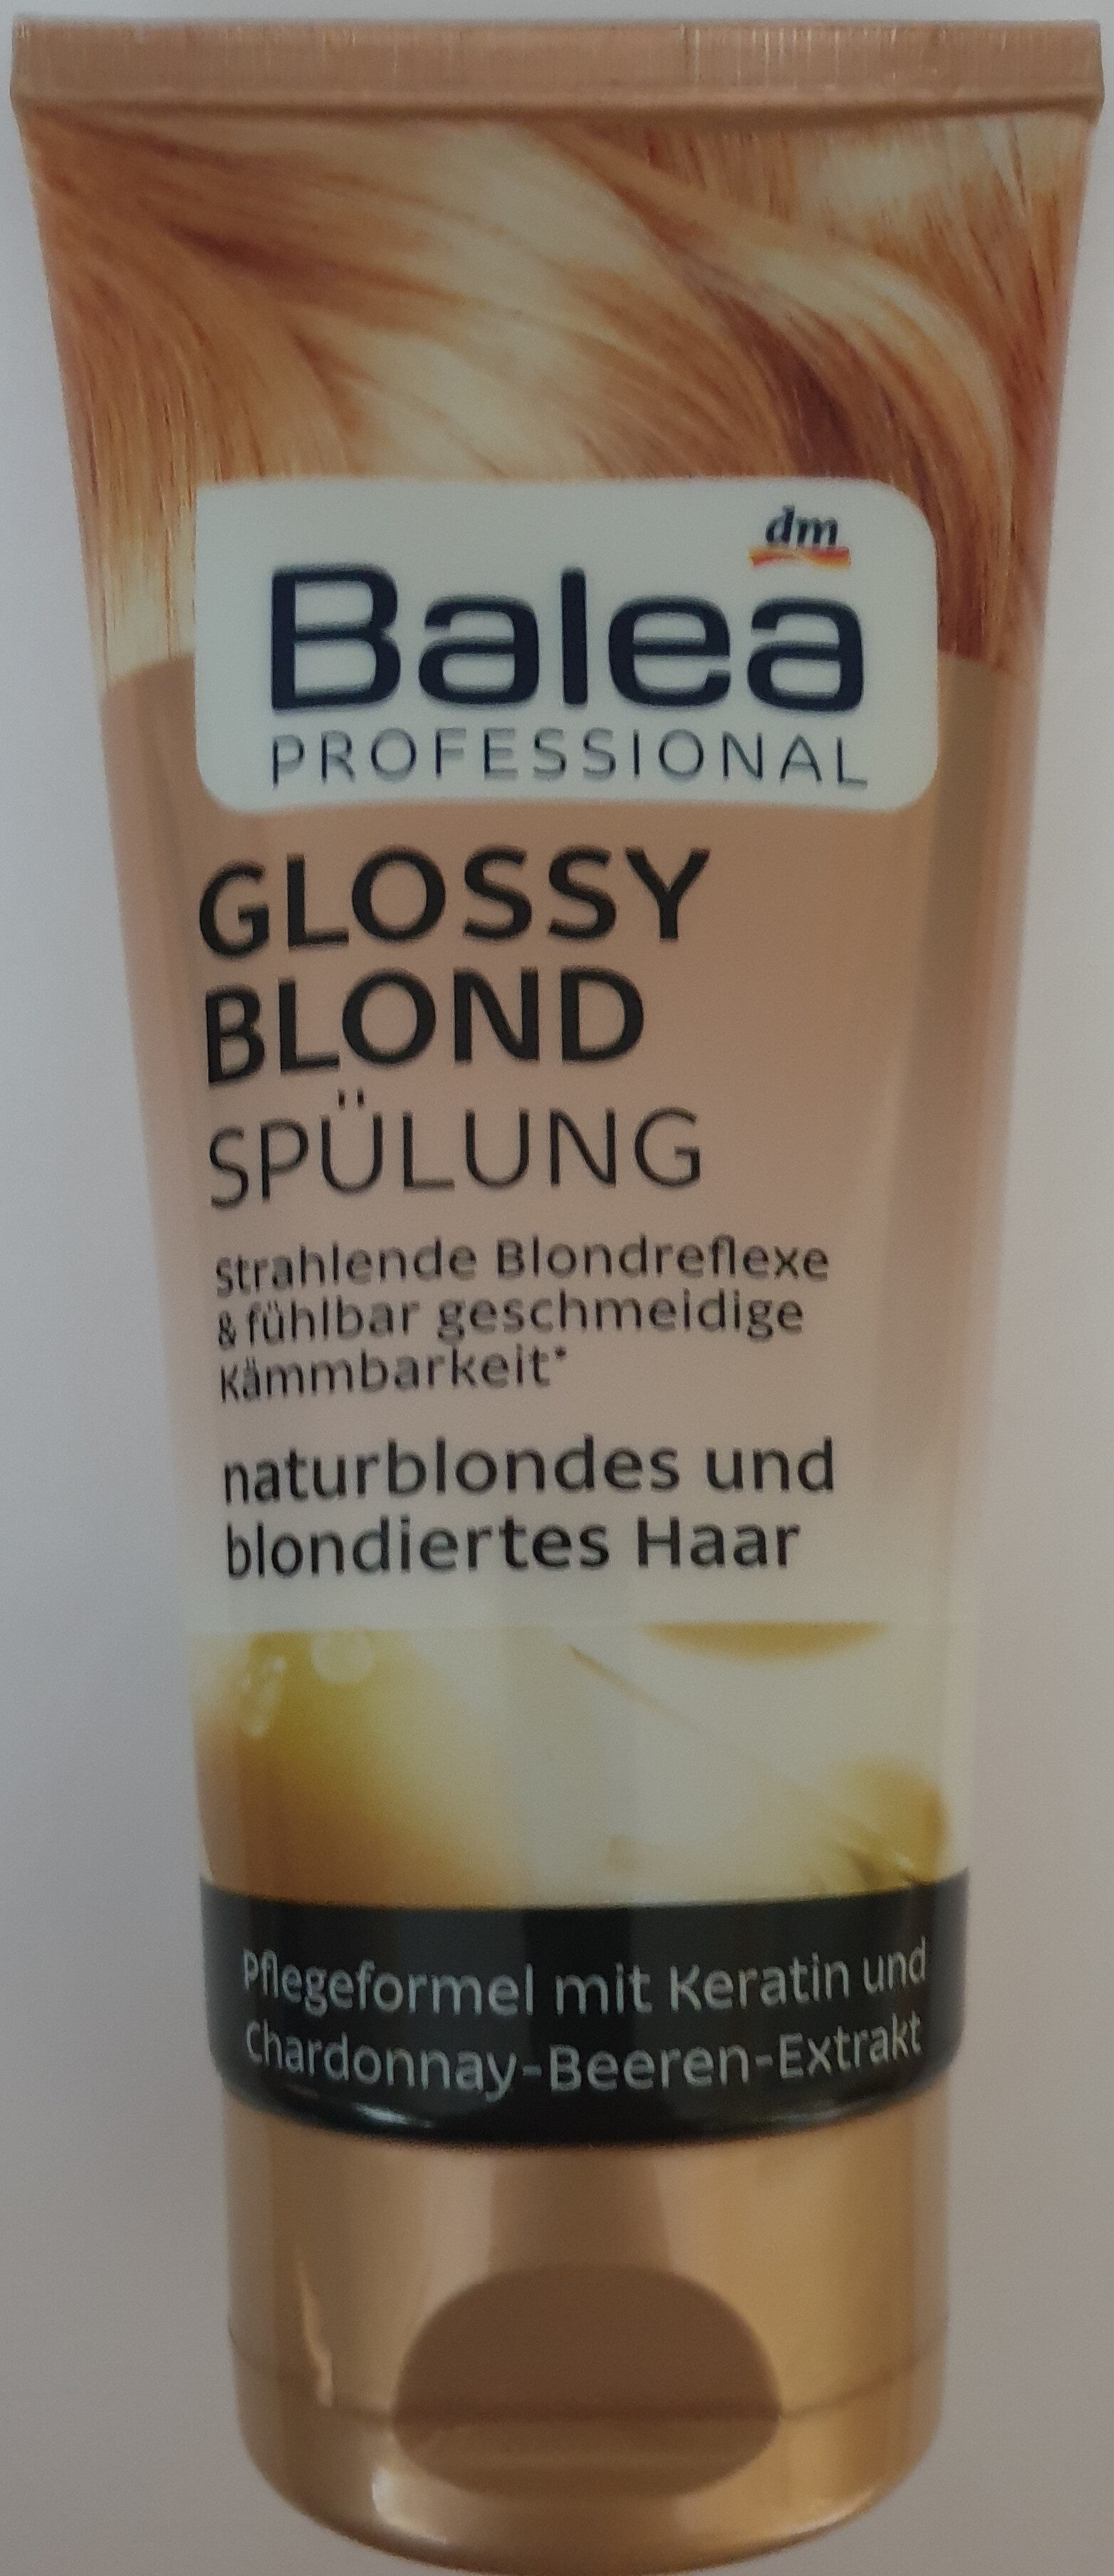 Glossy blond Spülung, naturblondes und blondiertes Haar - Produto - de